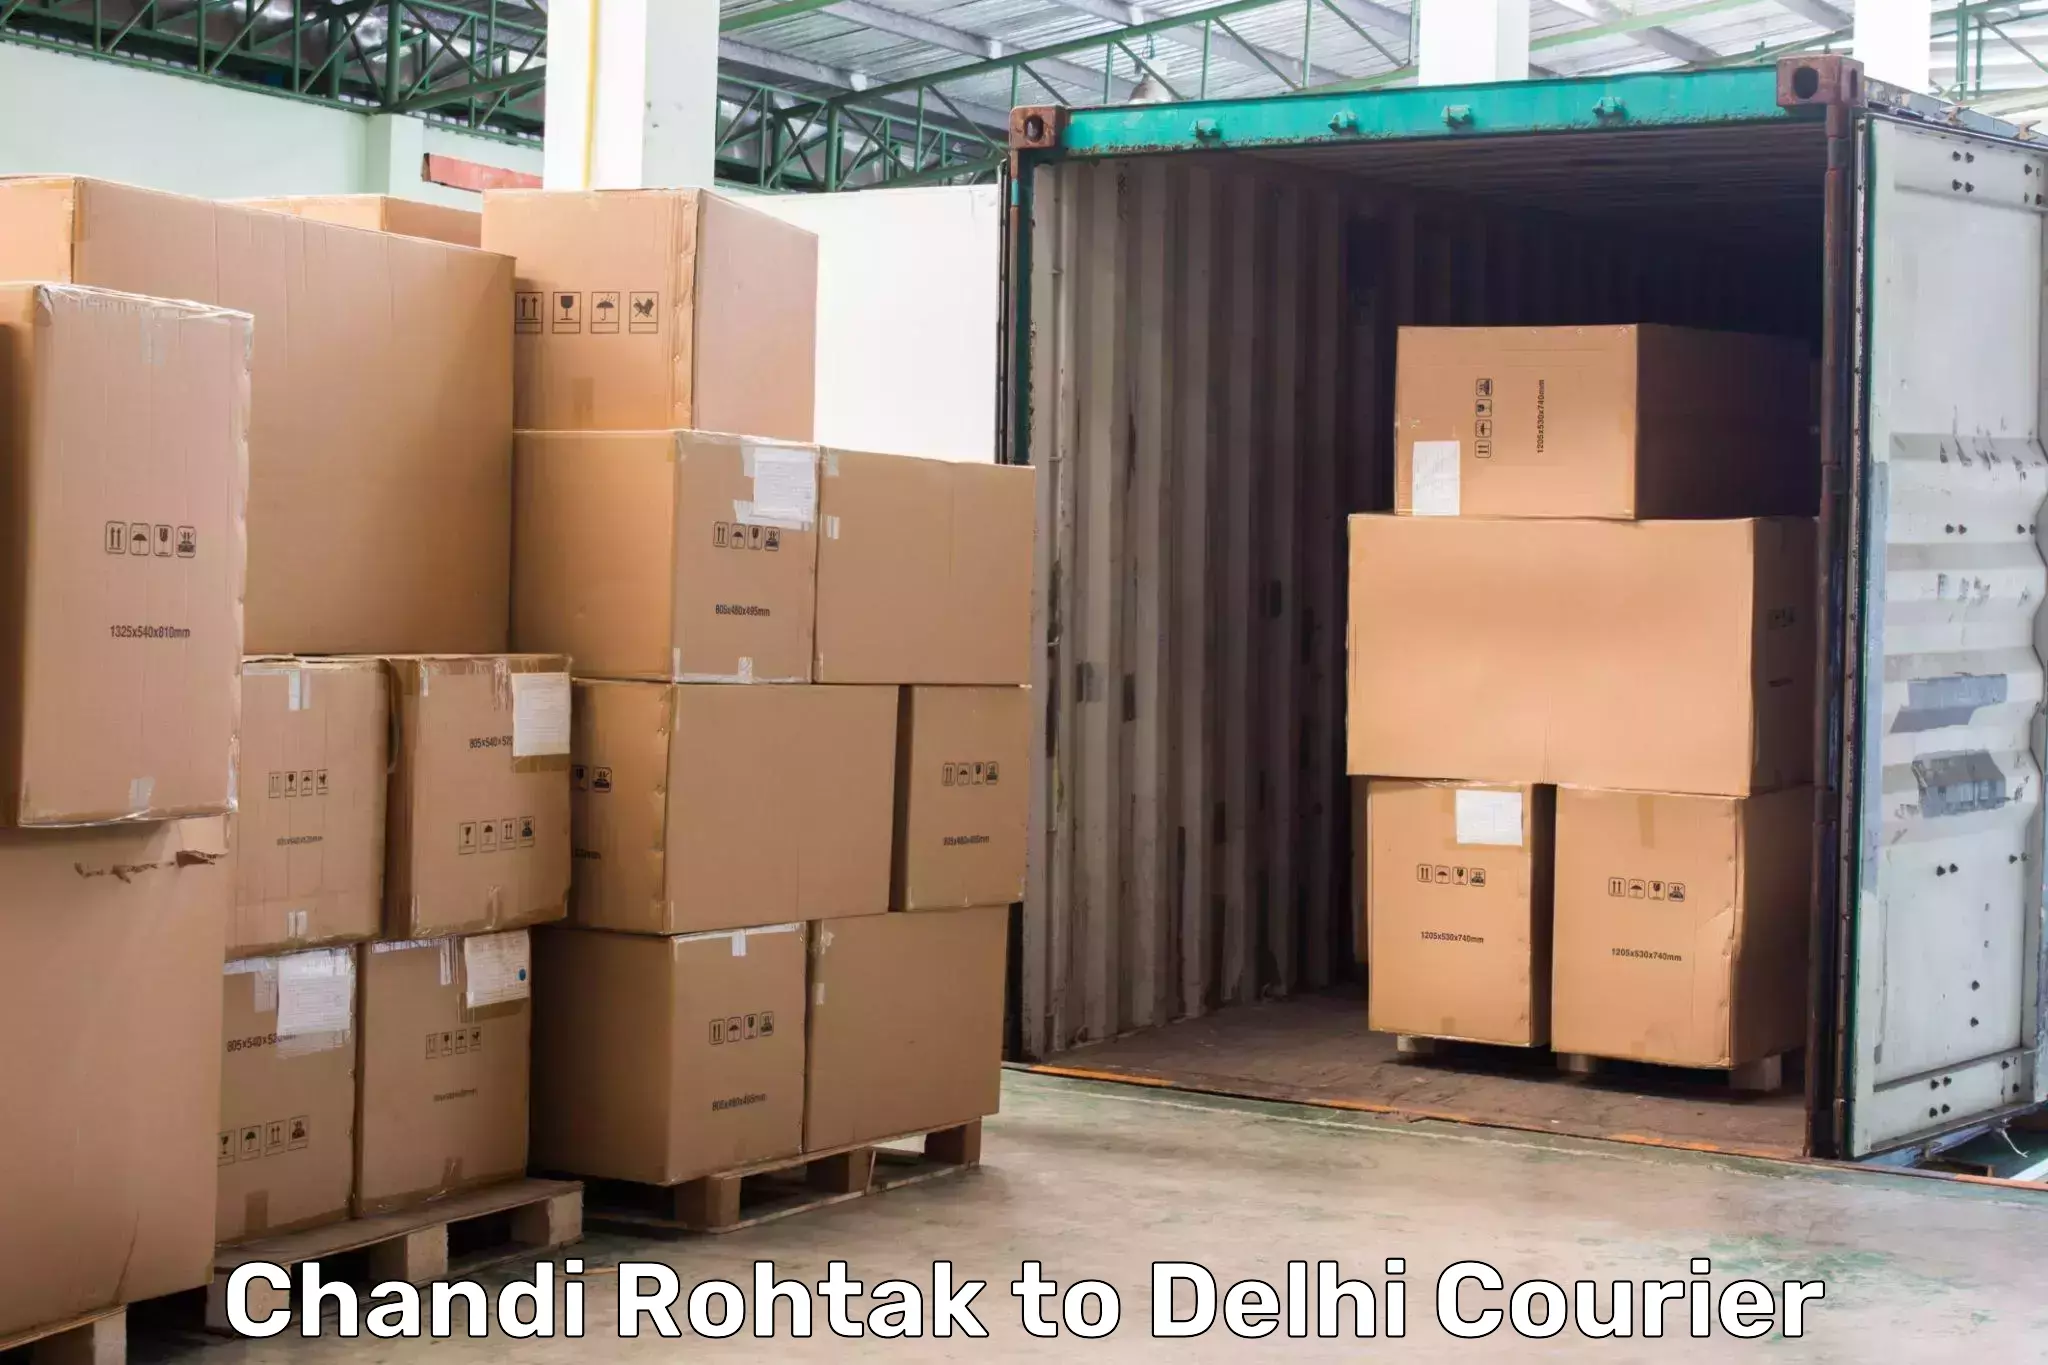 Cargo delivery service Chandi Rohtak to Delhi